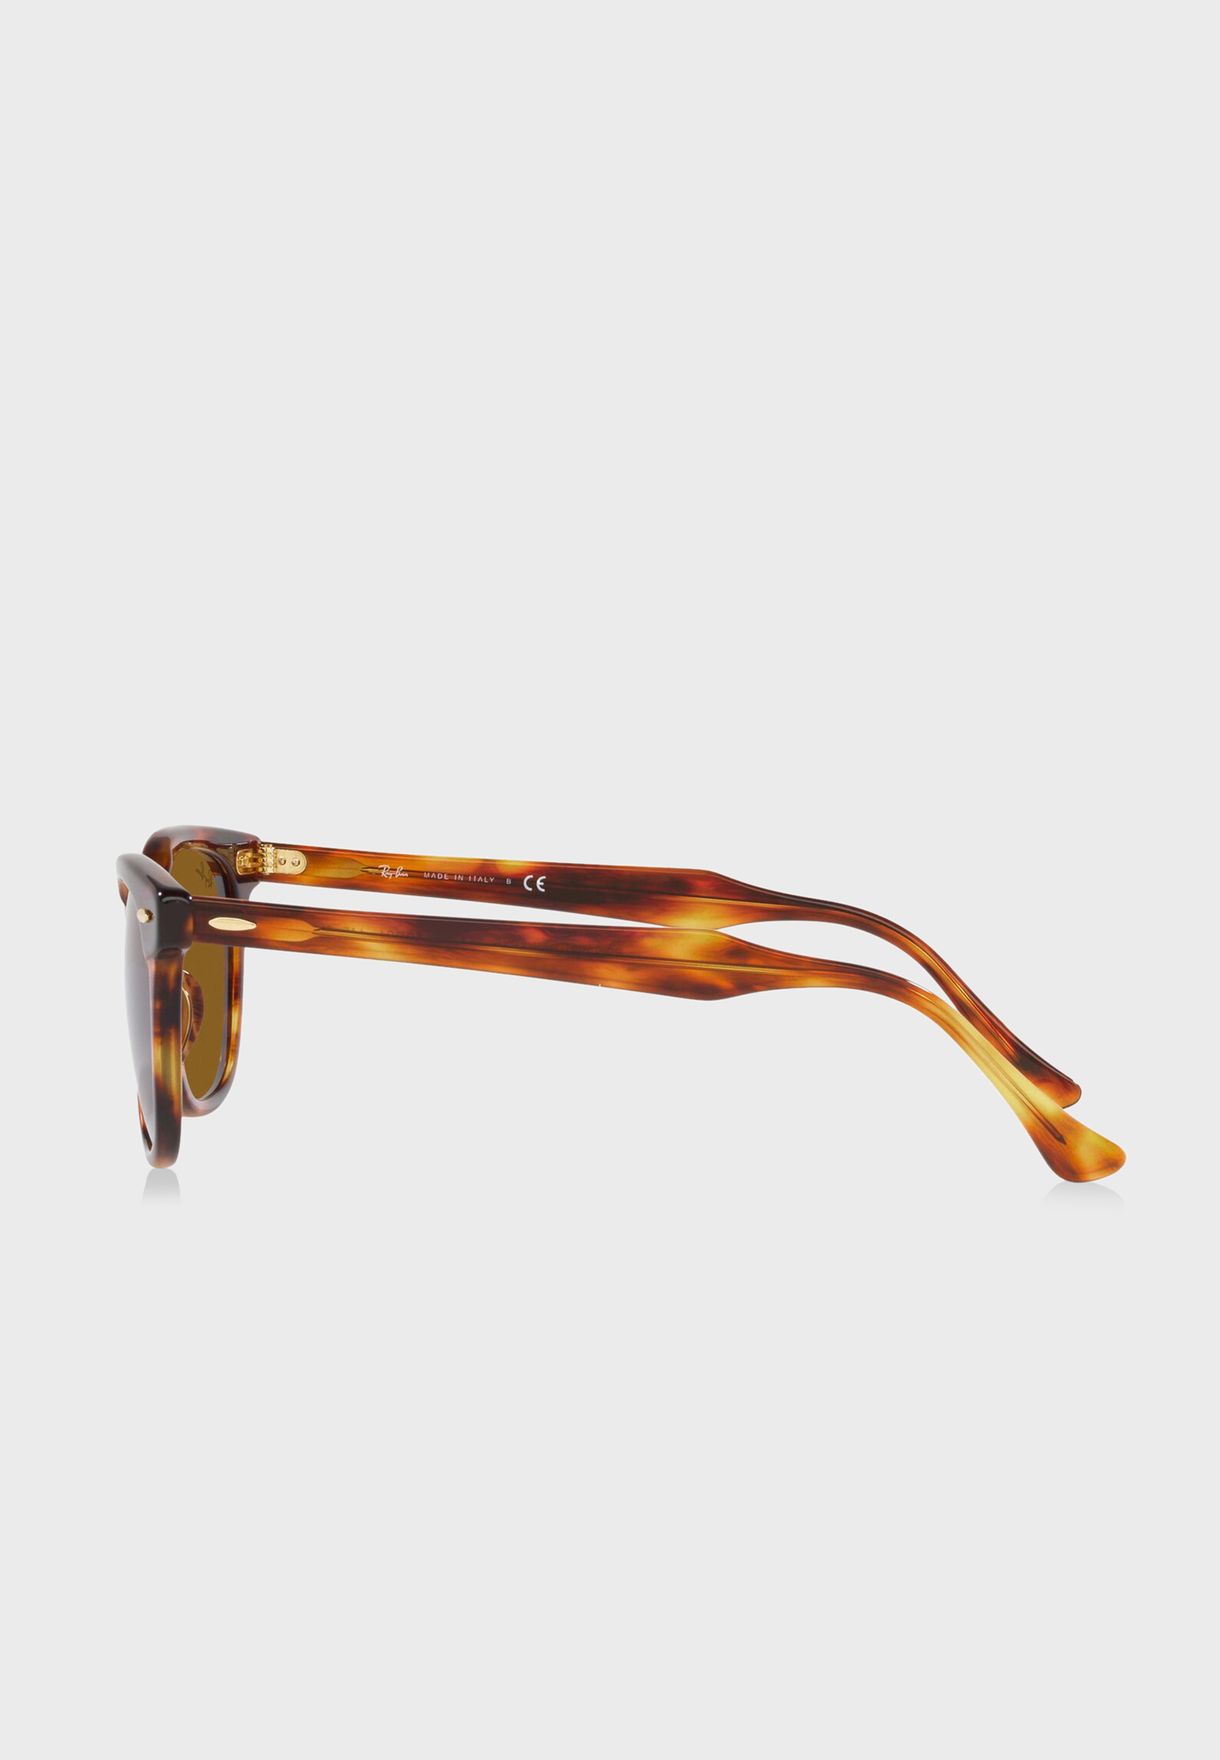 نظارة شمسية واي فيريرز 0Rb2298